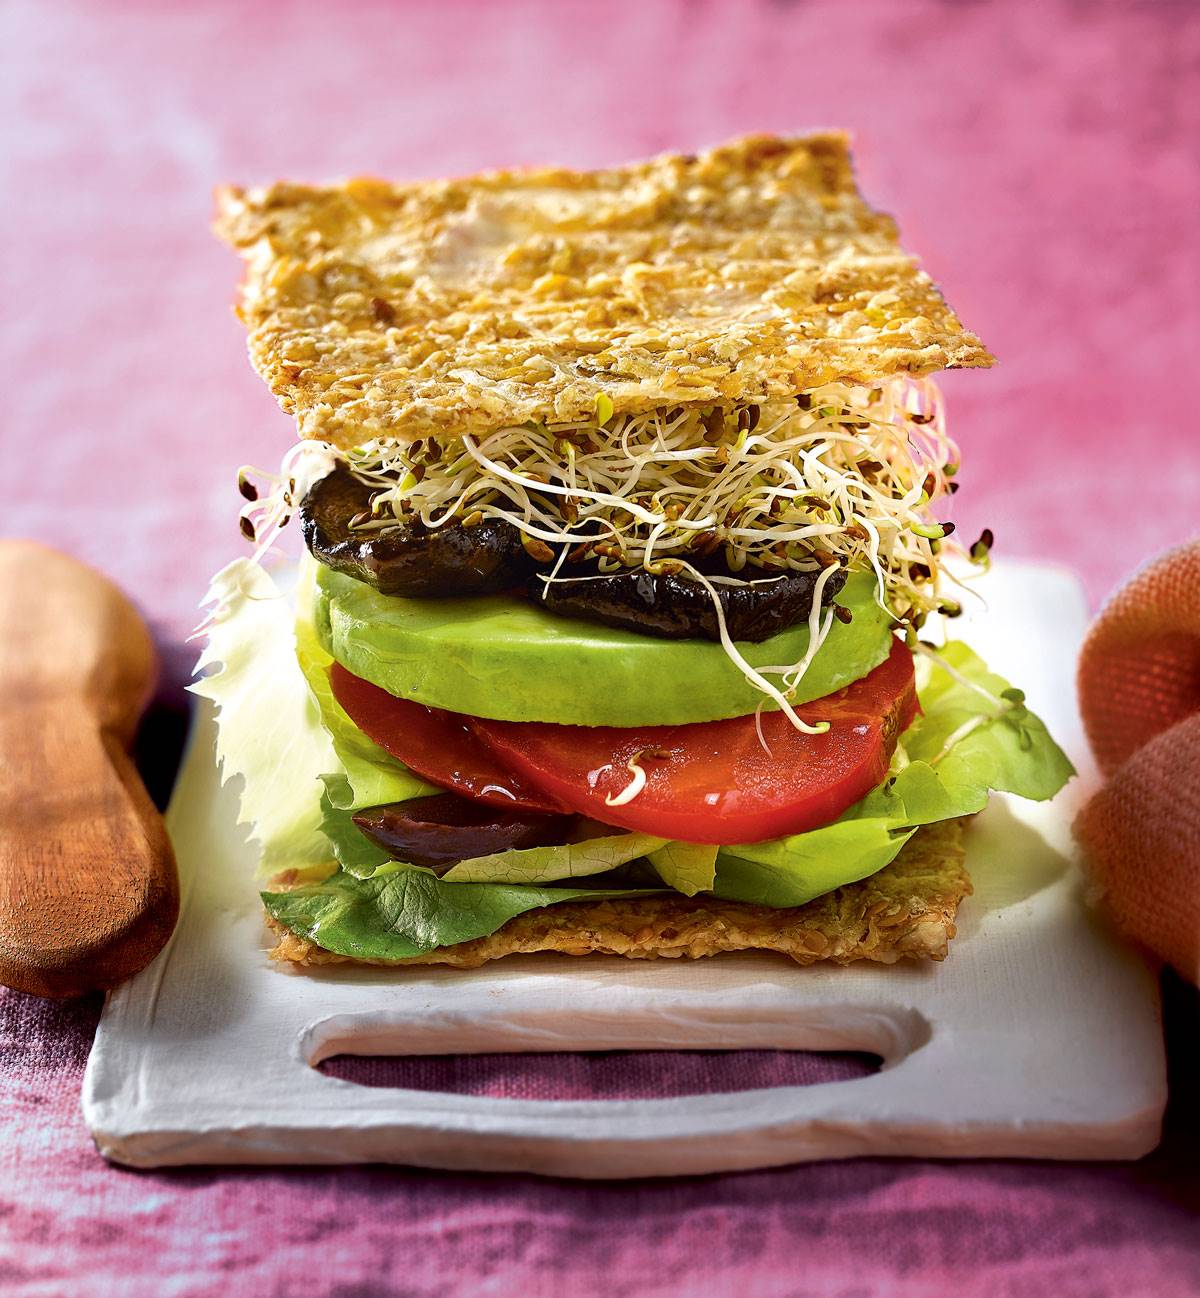 Desayuno saludable: receta de sándwich portobello con pan de trigo sarraceno. 